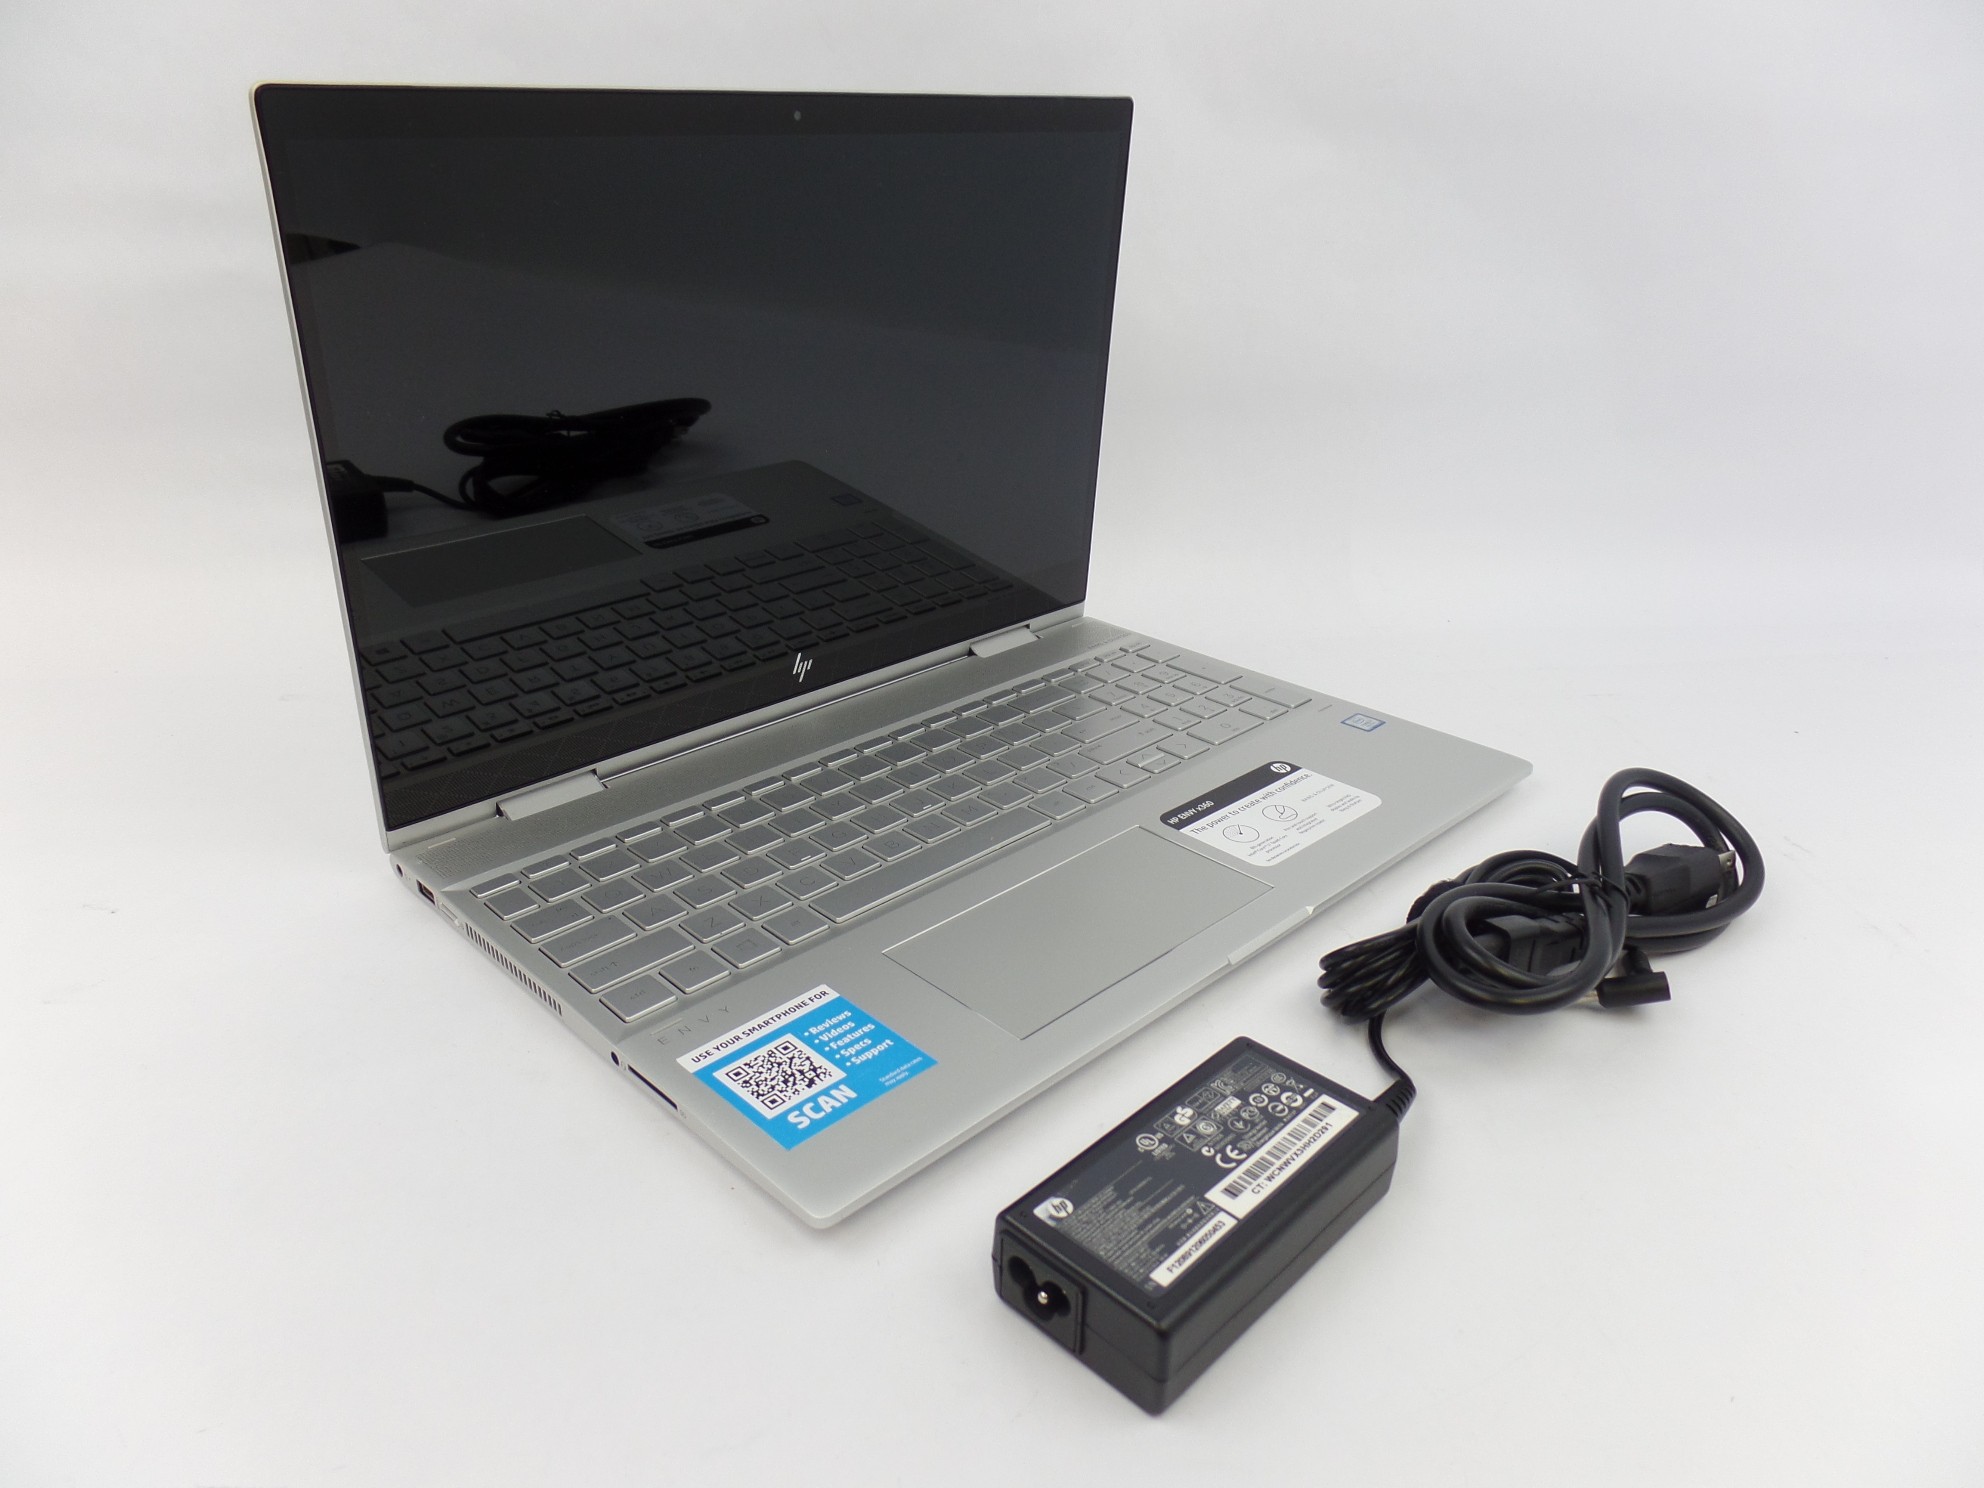 HP ENVY x360 15m-cn0012dx 15.6" FHD Touch i7-8550U 1.8GHz 12GB 256GB SSD W10H U